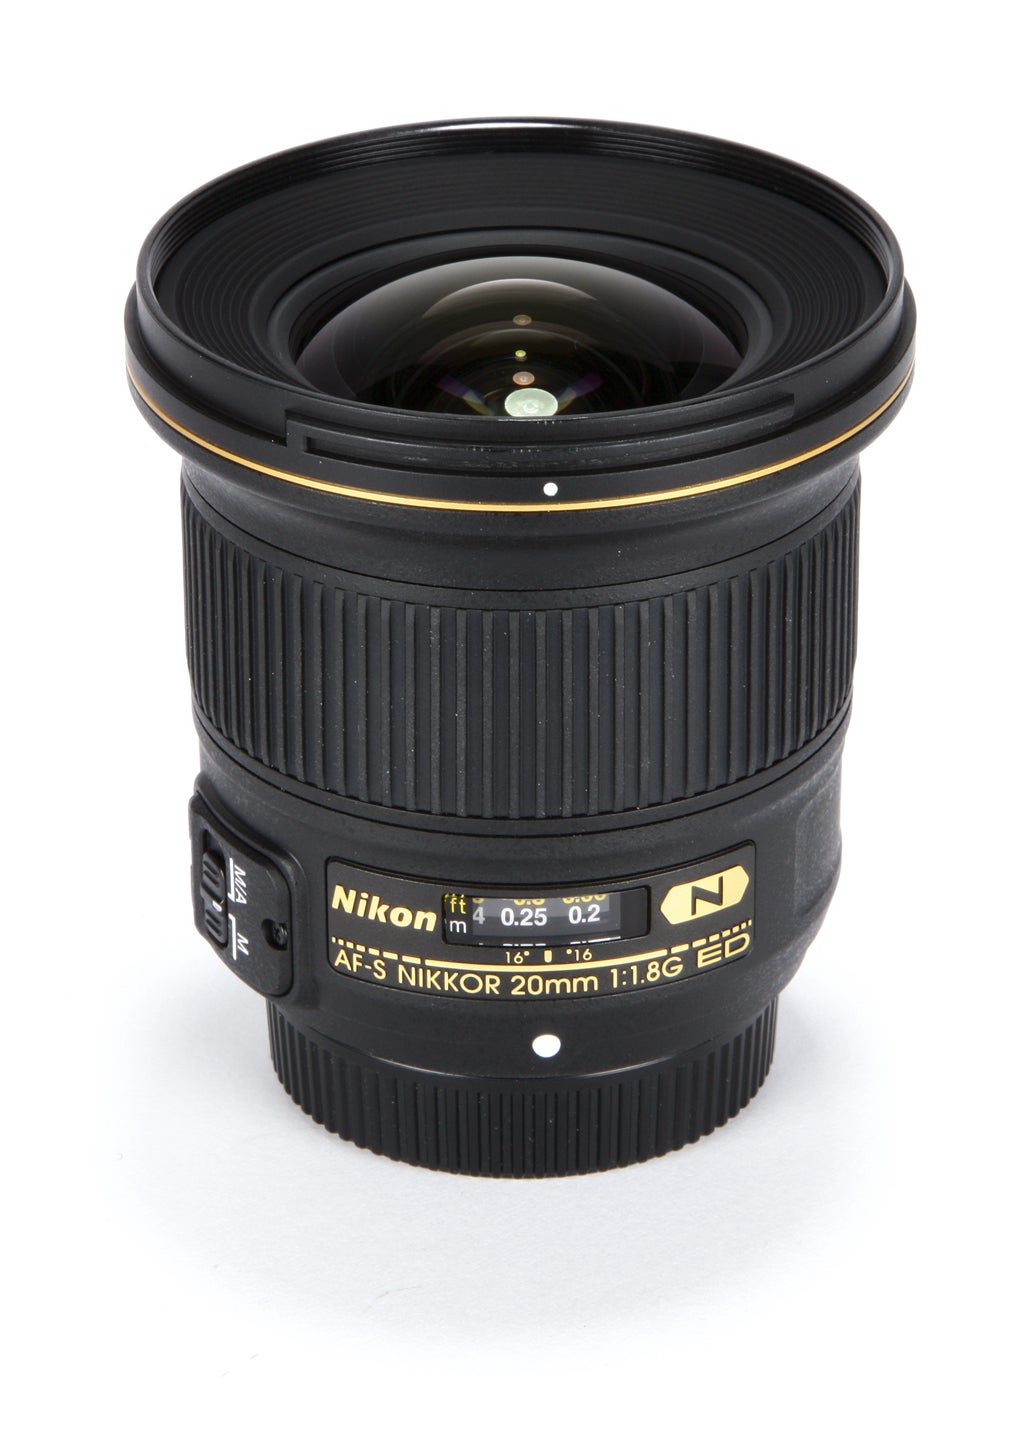 Nikon-AF-S-Nikkor-20mm-f1.8G-ED-top